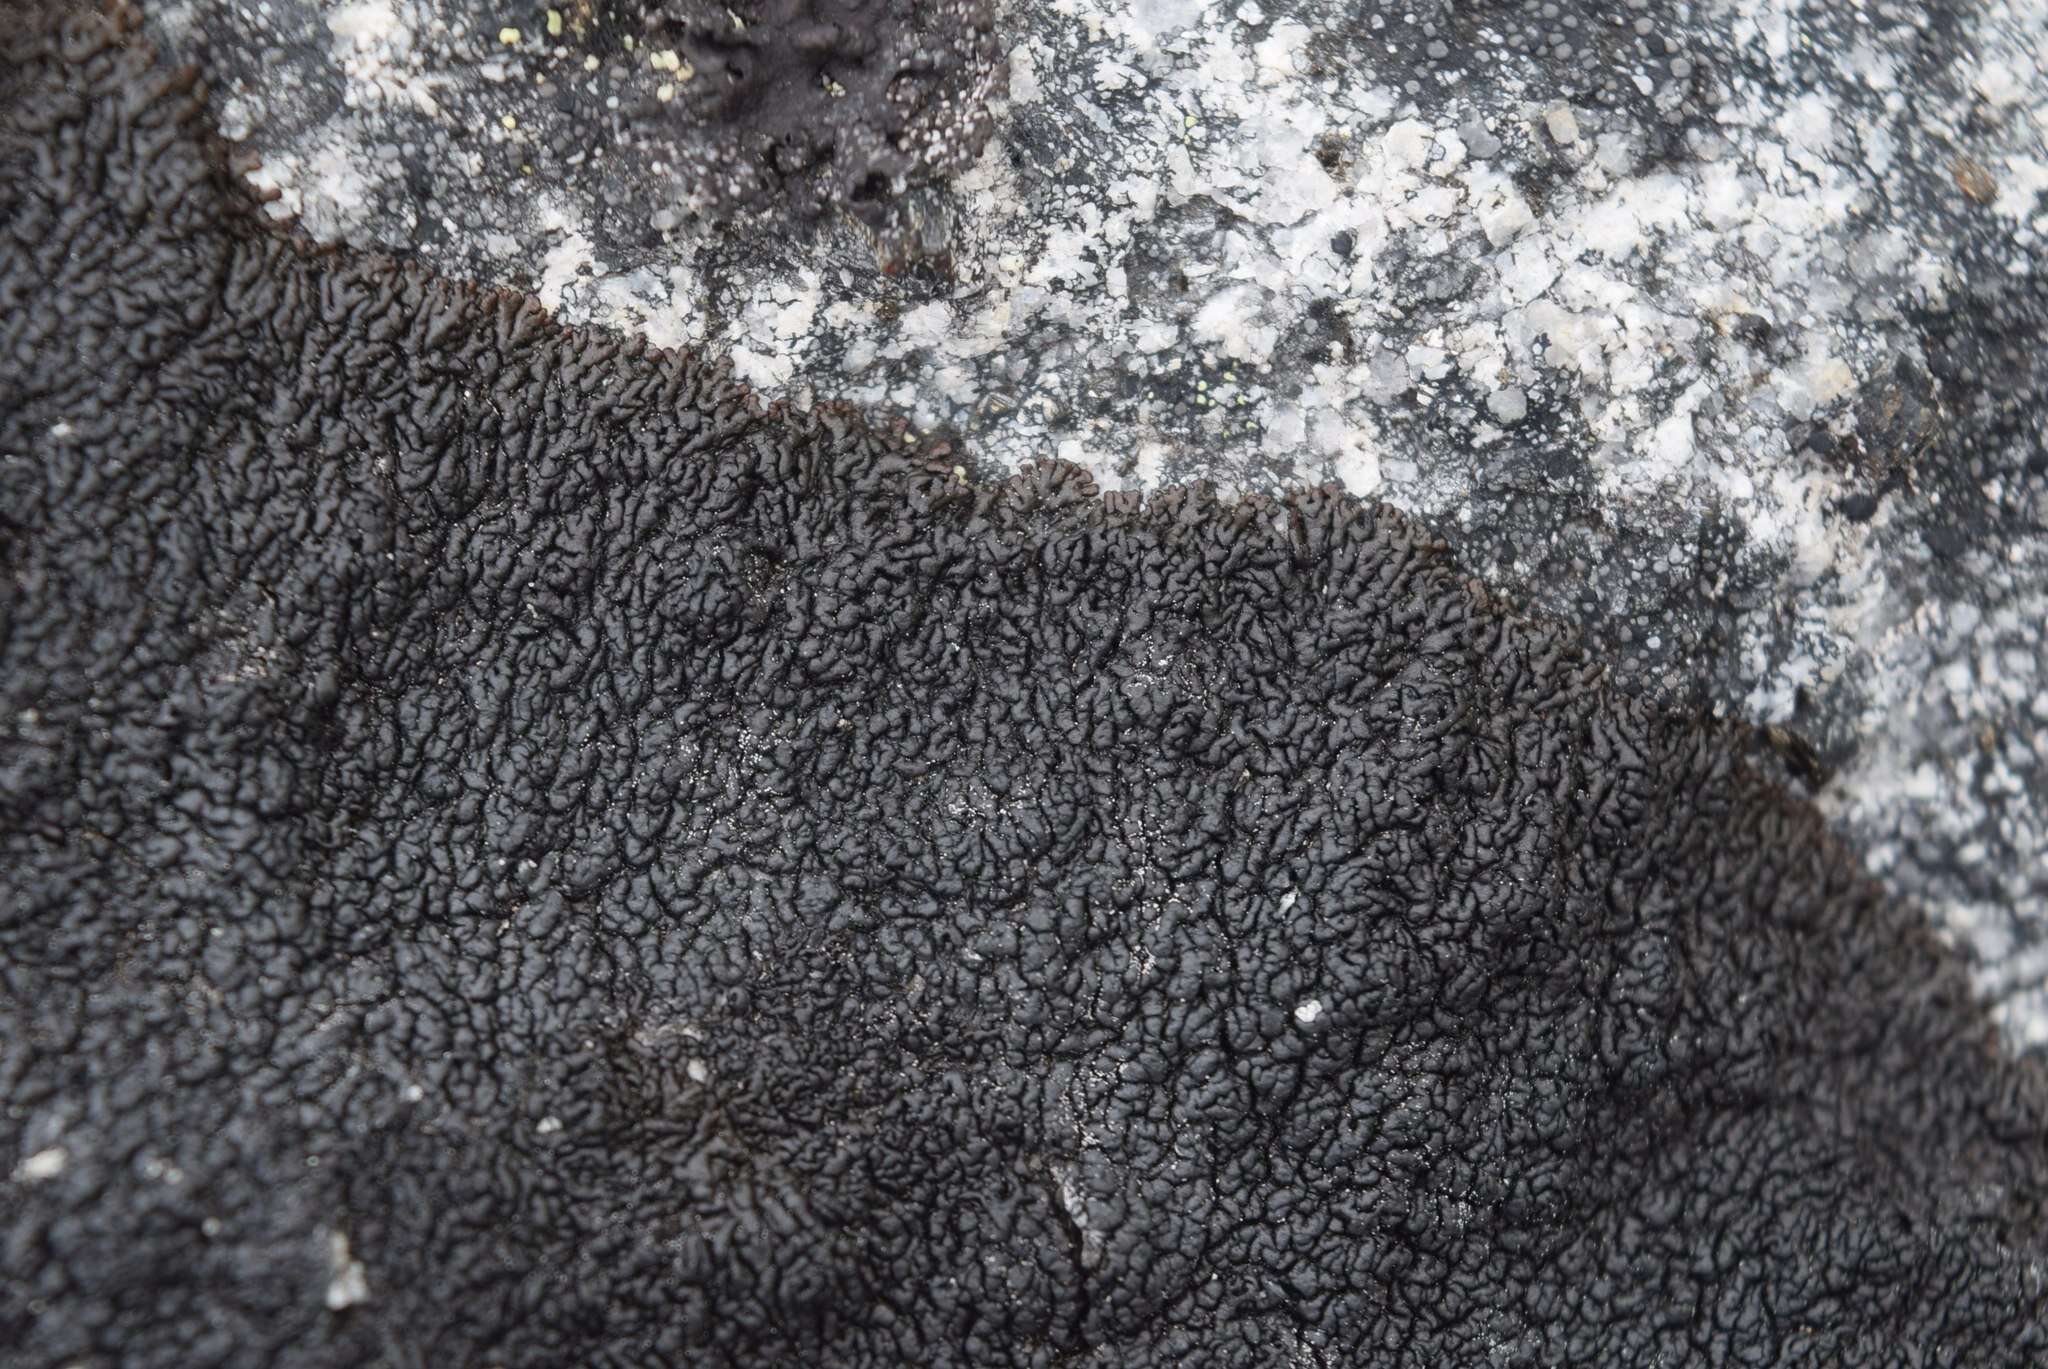 Image of allantoparmelia lichen